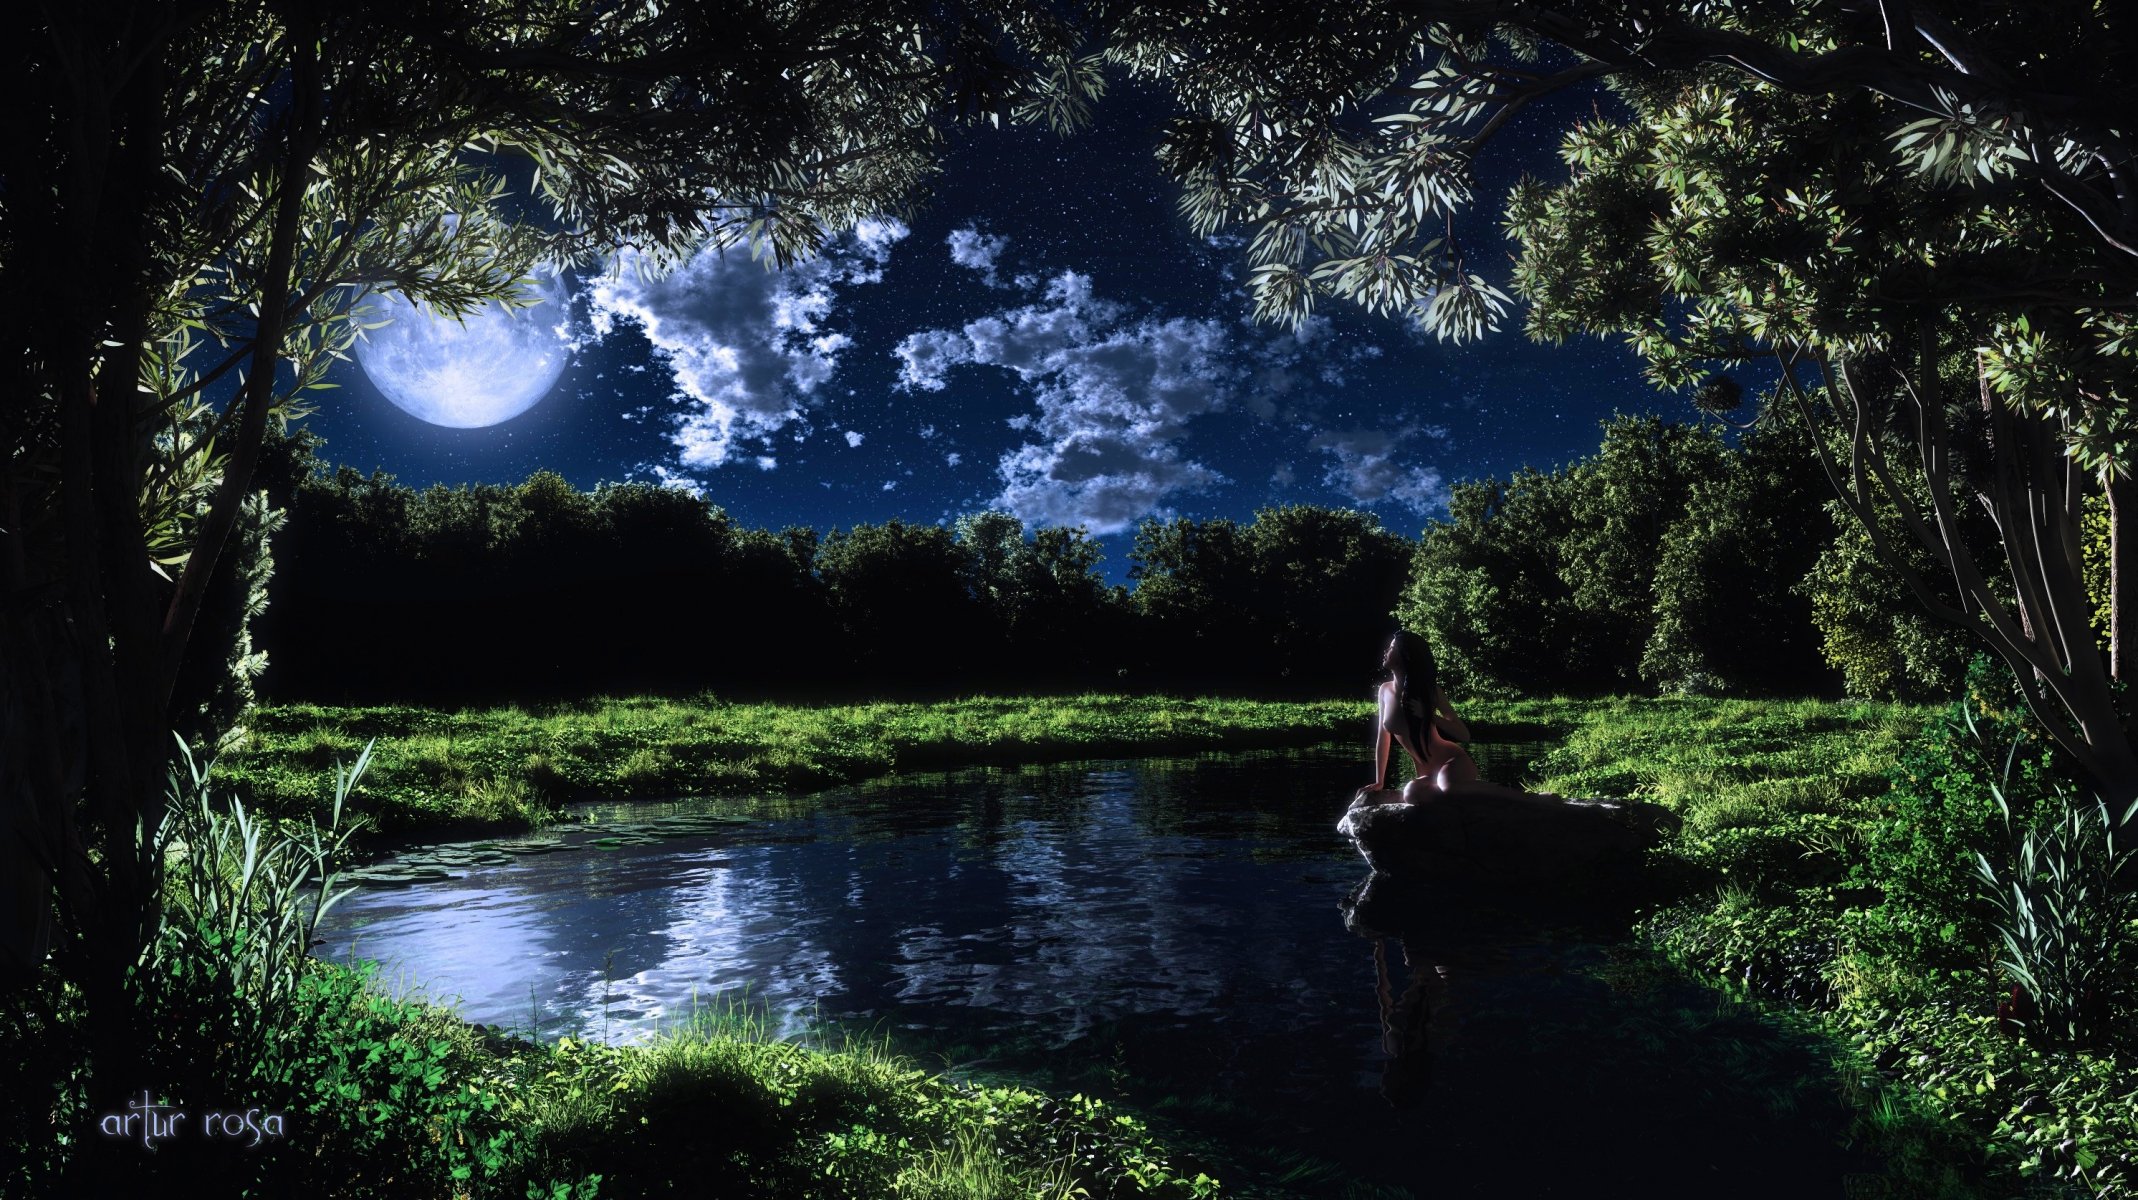 Ночь озеро Луна девушка